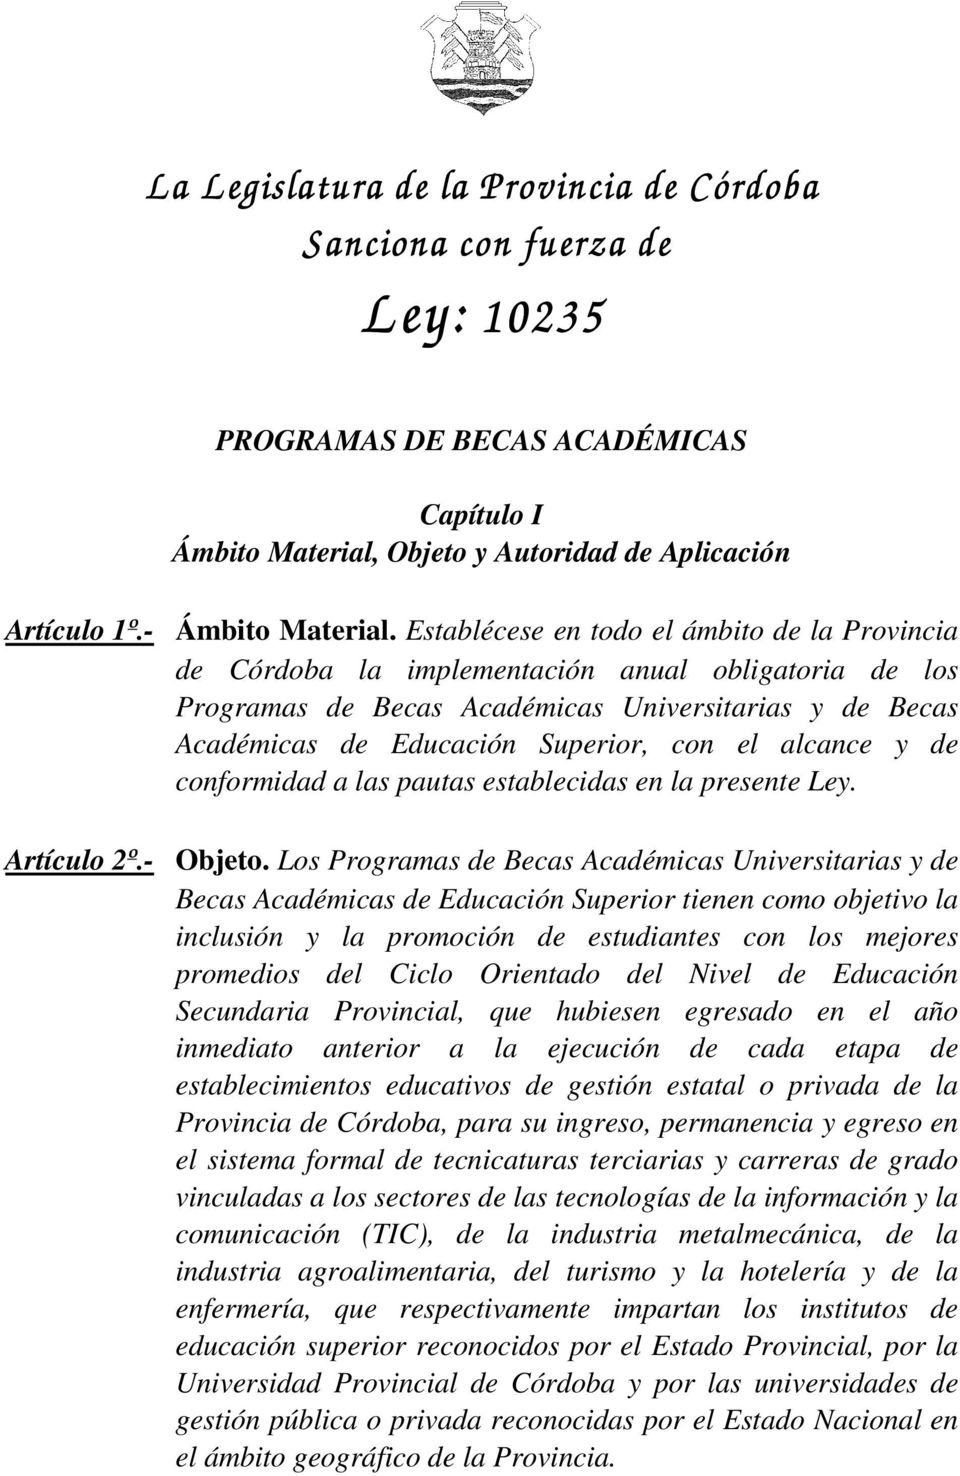 Establécese en todo el ámbito de la Provincia de Córdoba la implementación anual obligatoria de los Programas de Becas Académicas Universitarias y de Becas Académicas de Educación Superior, con el